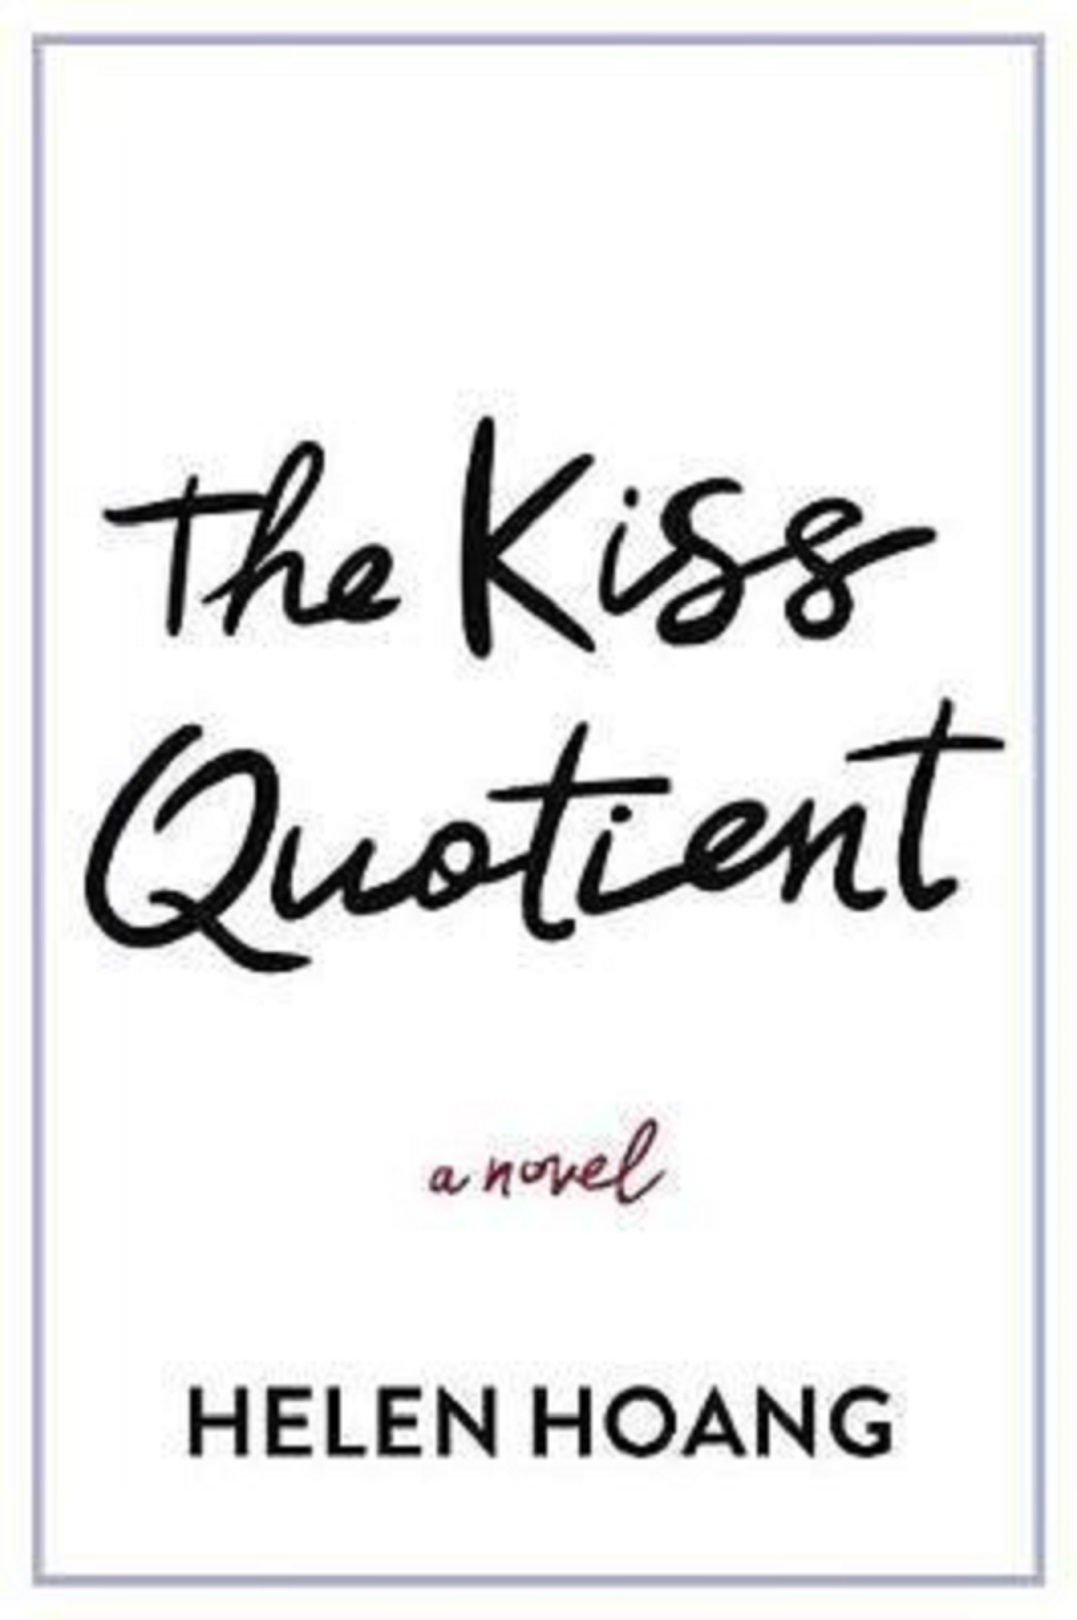 The Kiss Quotient | Helen Hoang